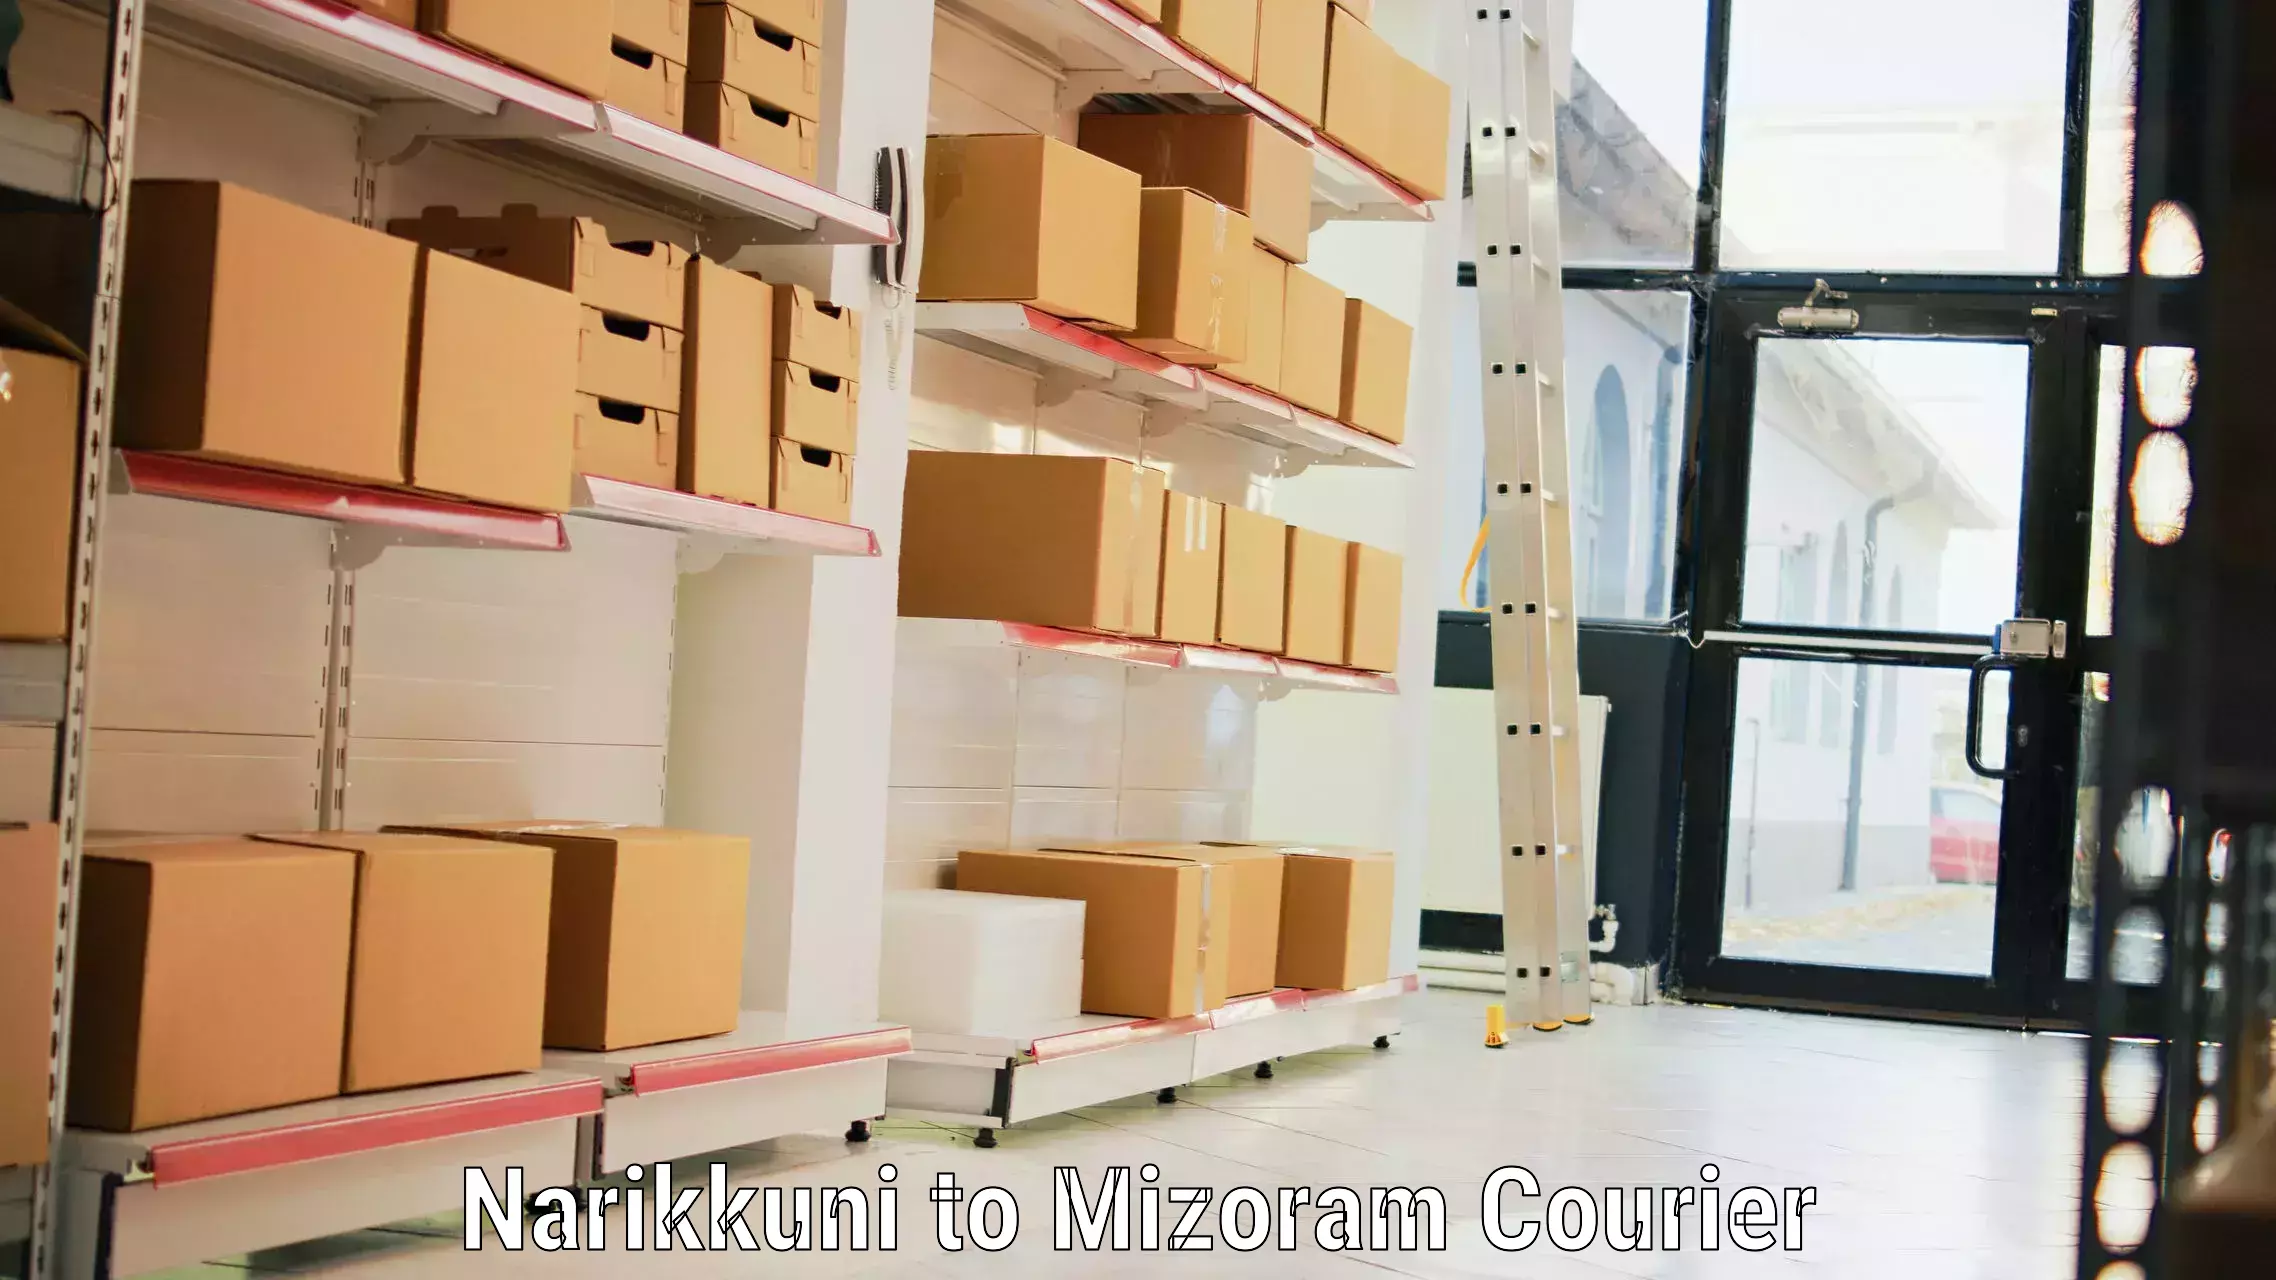 Baggage courier pricing Narikkuni to Mizoram